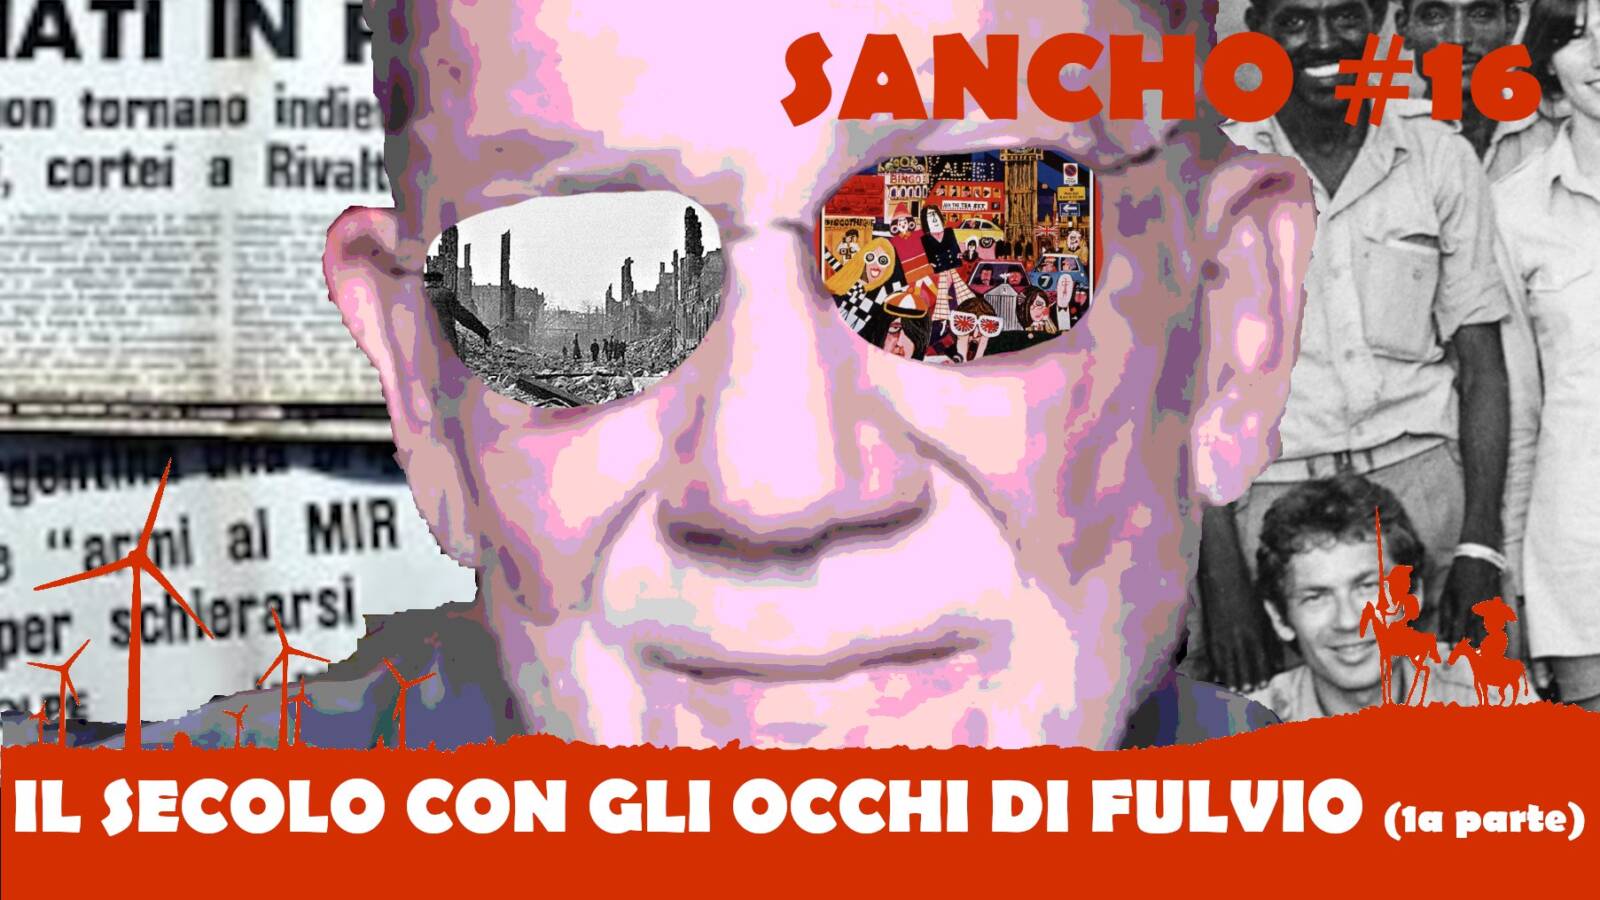 Sancho #16 – Fulvio Grimaldi – Il secolo con gli occhi di Fulvio (1a parte)